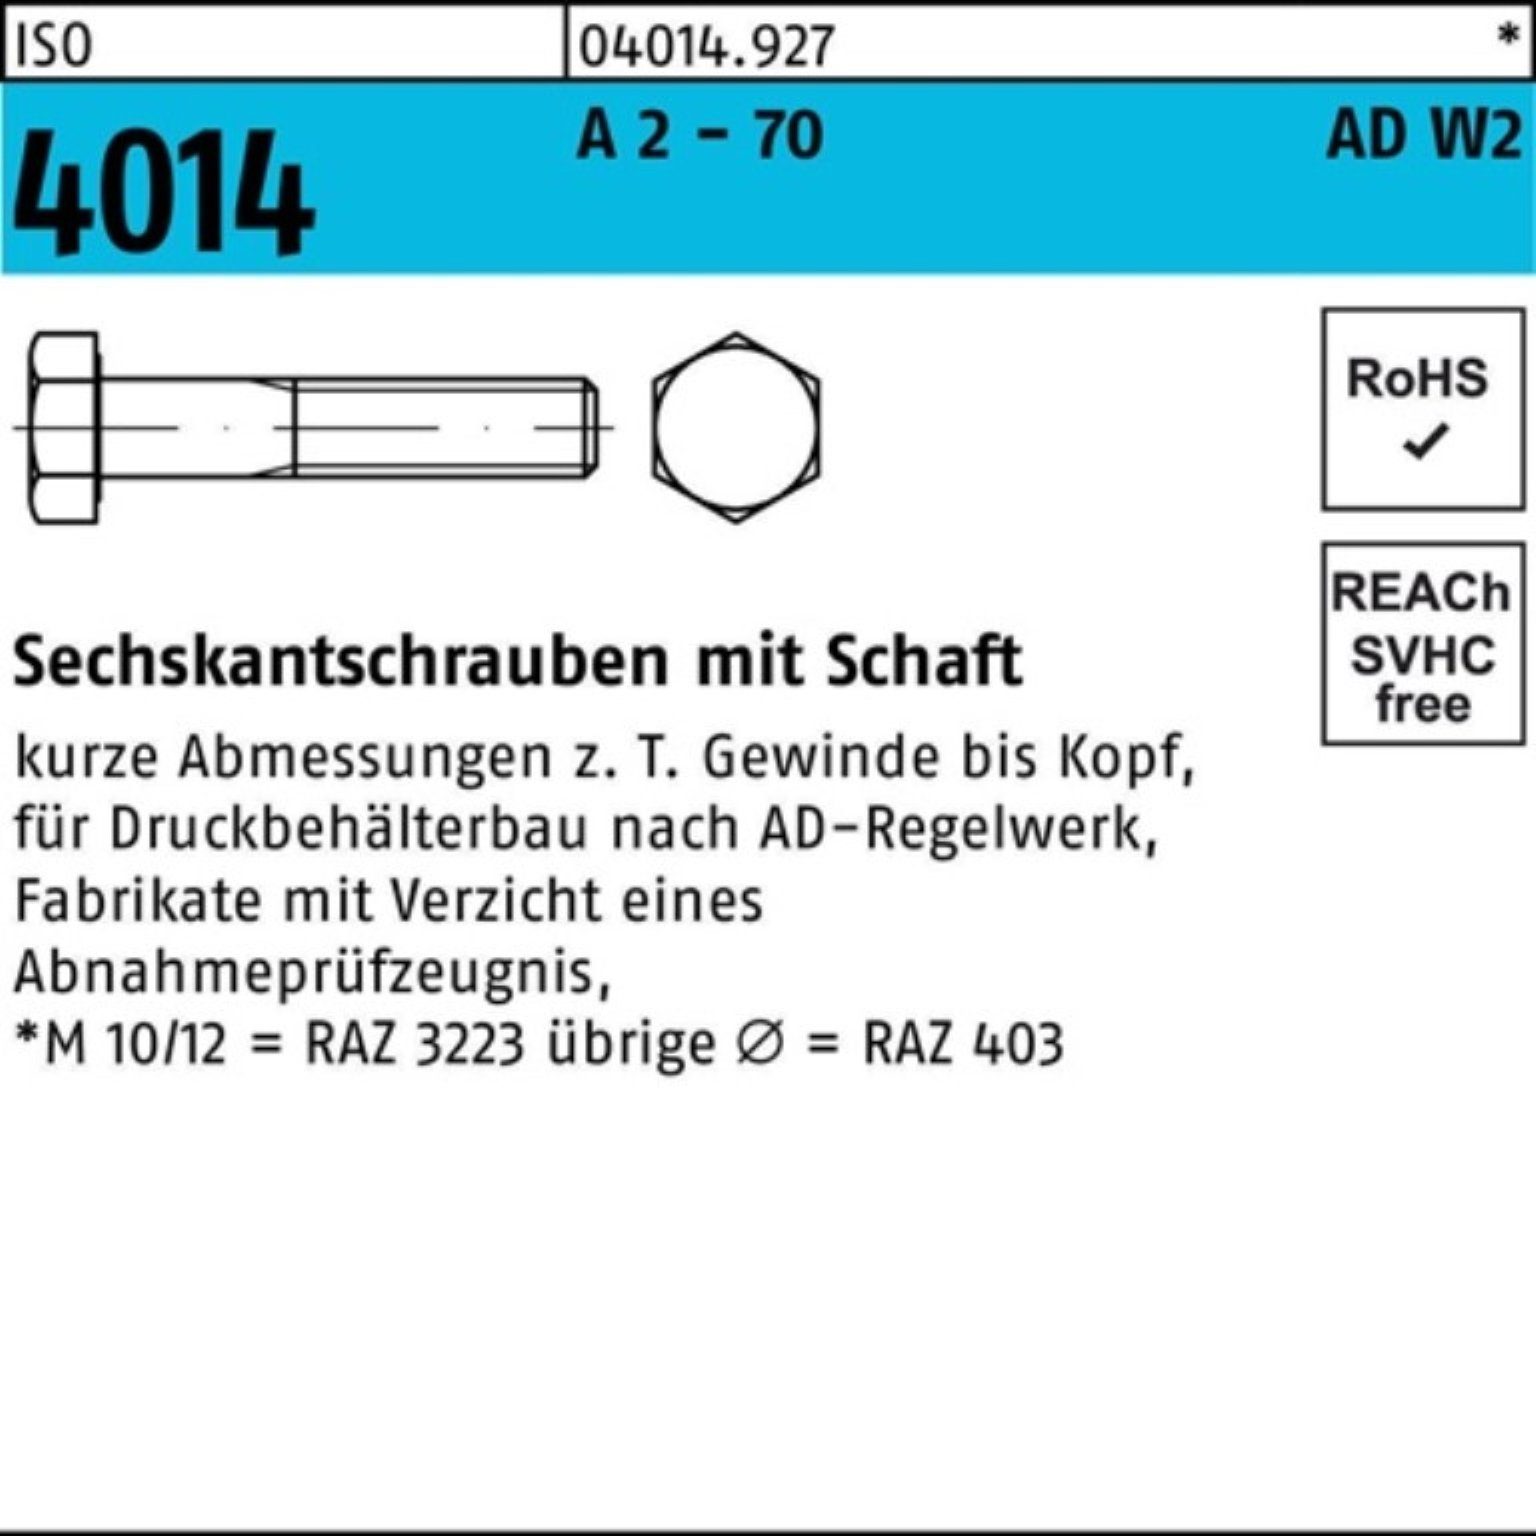 A M16x - Sechskantschraube 100er 70 Schaft 4014 25 Bufab Sechskantschraube Pack 2 AD-W2 ISO 75